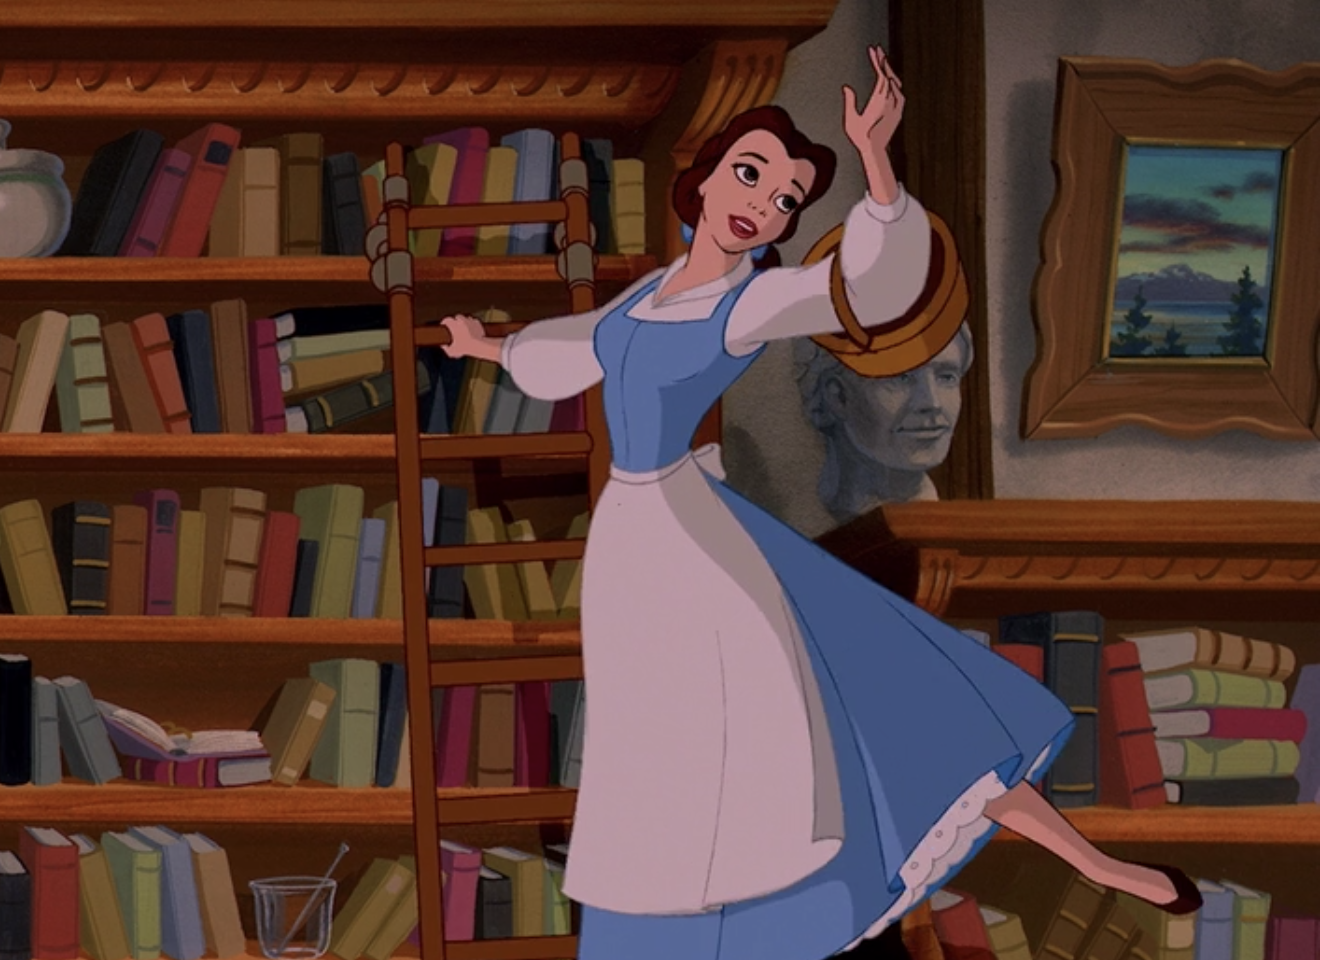 Belle stands on a ladder near book shelves